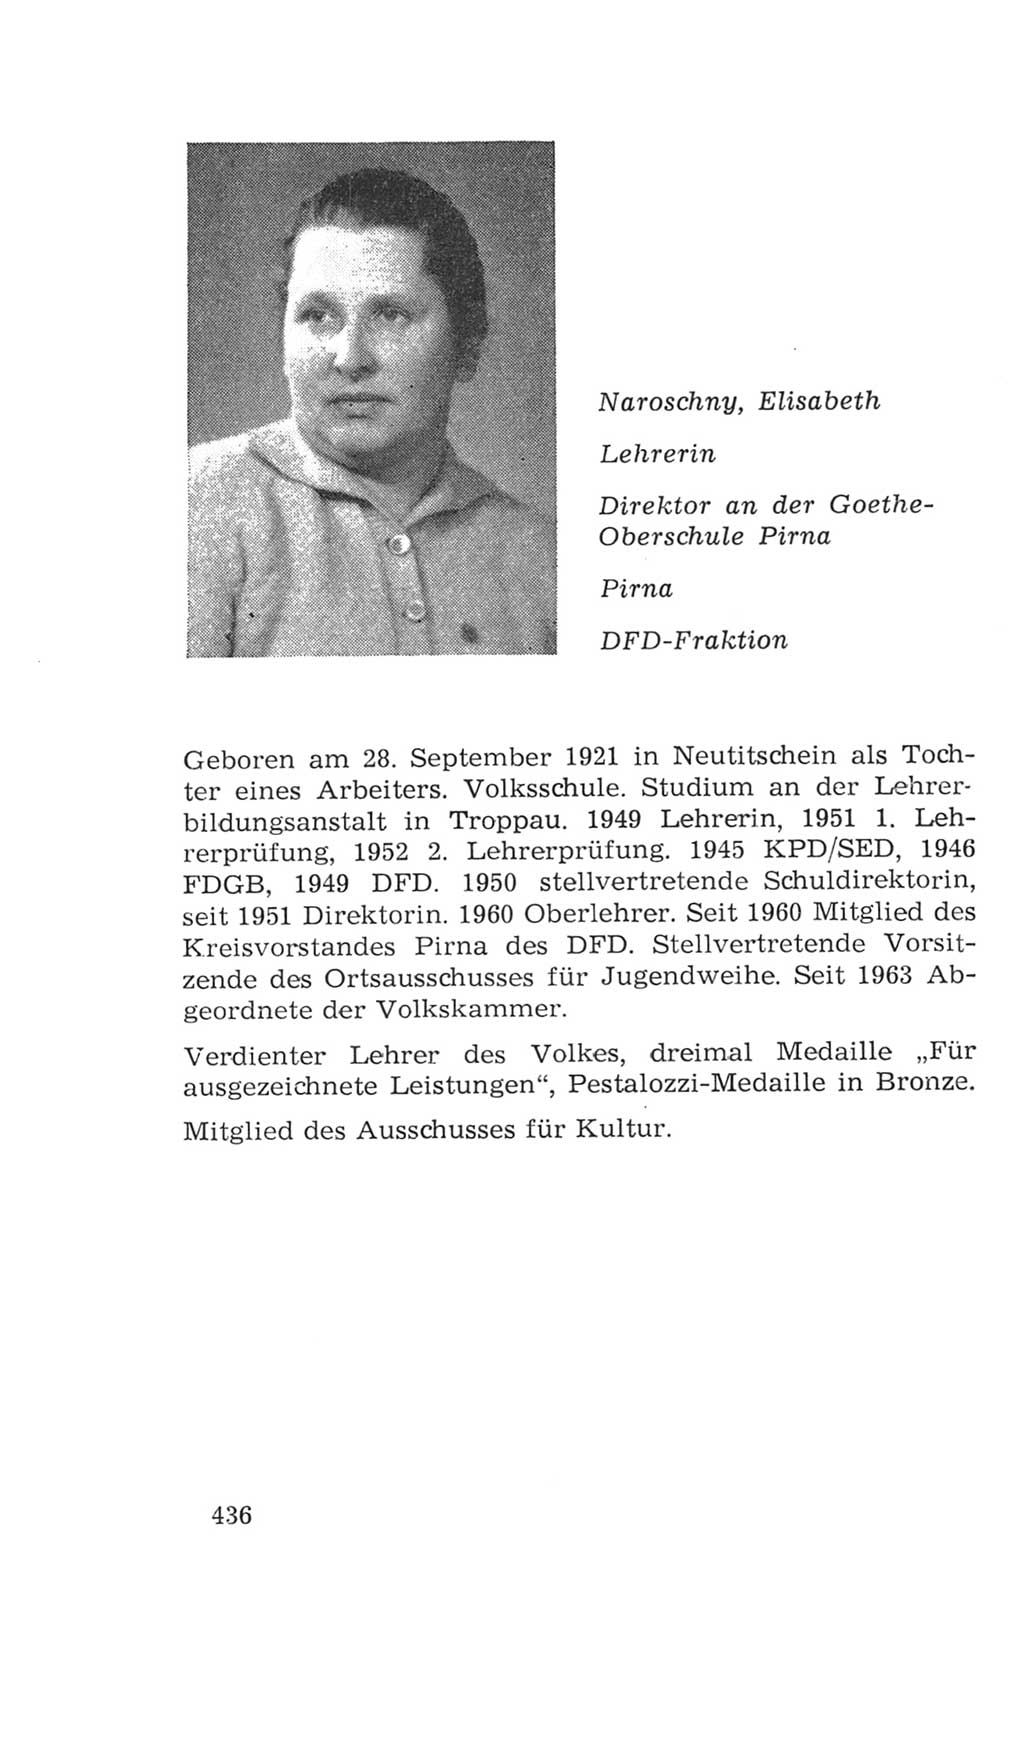 Volkskammer (VK) der Deutschen Demokratischen Republik (DDR), 4. Wahlperiode 1963-1967, Seite 436 (VK. DDR 4. WP. 1963-1967, S. 436)